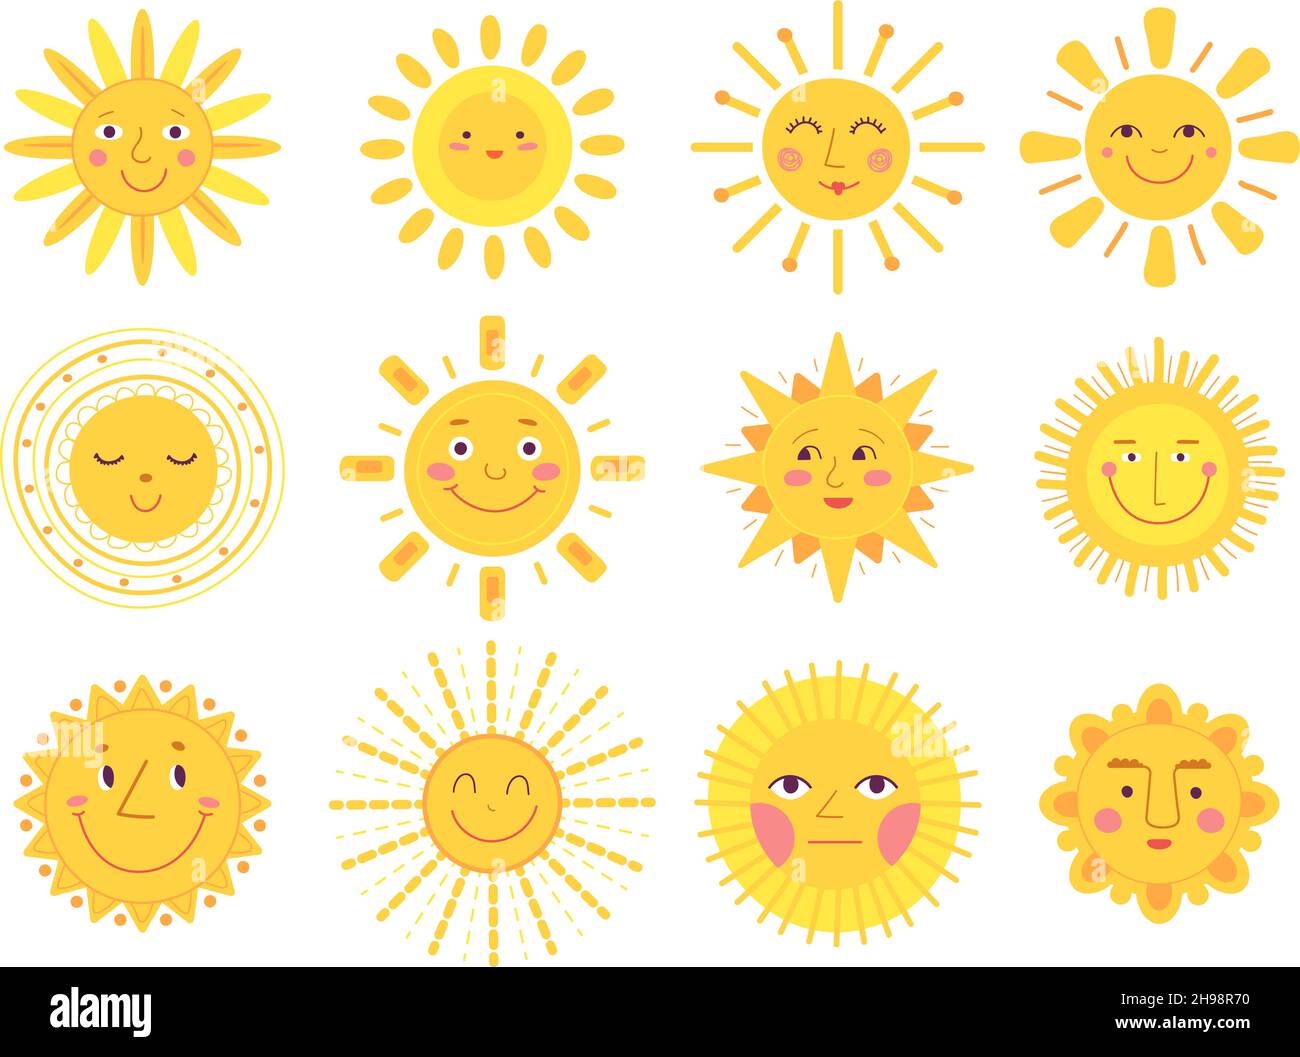 Caractères Sun.Soleil de bébé, comique soleil visages drôles.Symboles d'été jaunes de dessin animé plat isolé.Beau temps chaud, saisonnier abstrait correct Illustration de Vecteur